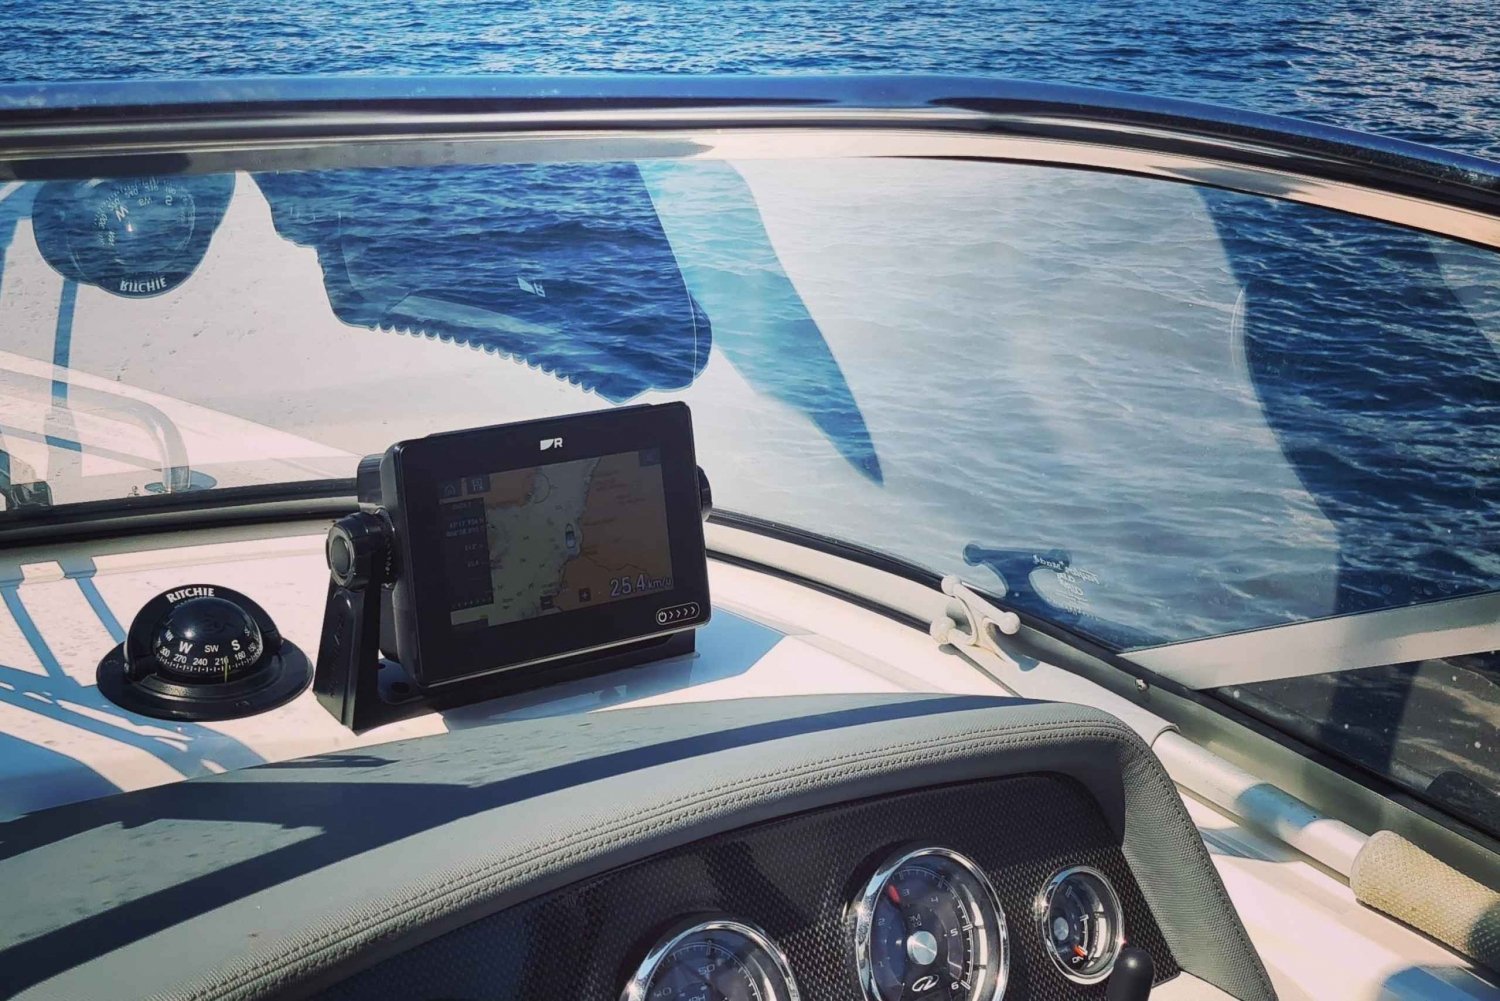 Golfe de Saint Tropez gita in barca privata all inclusive